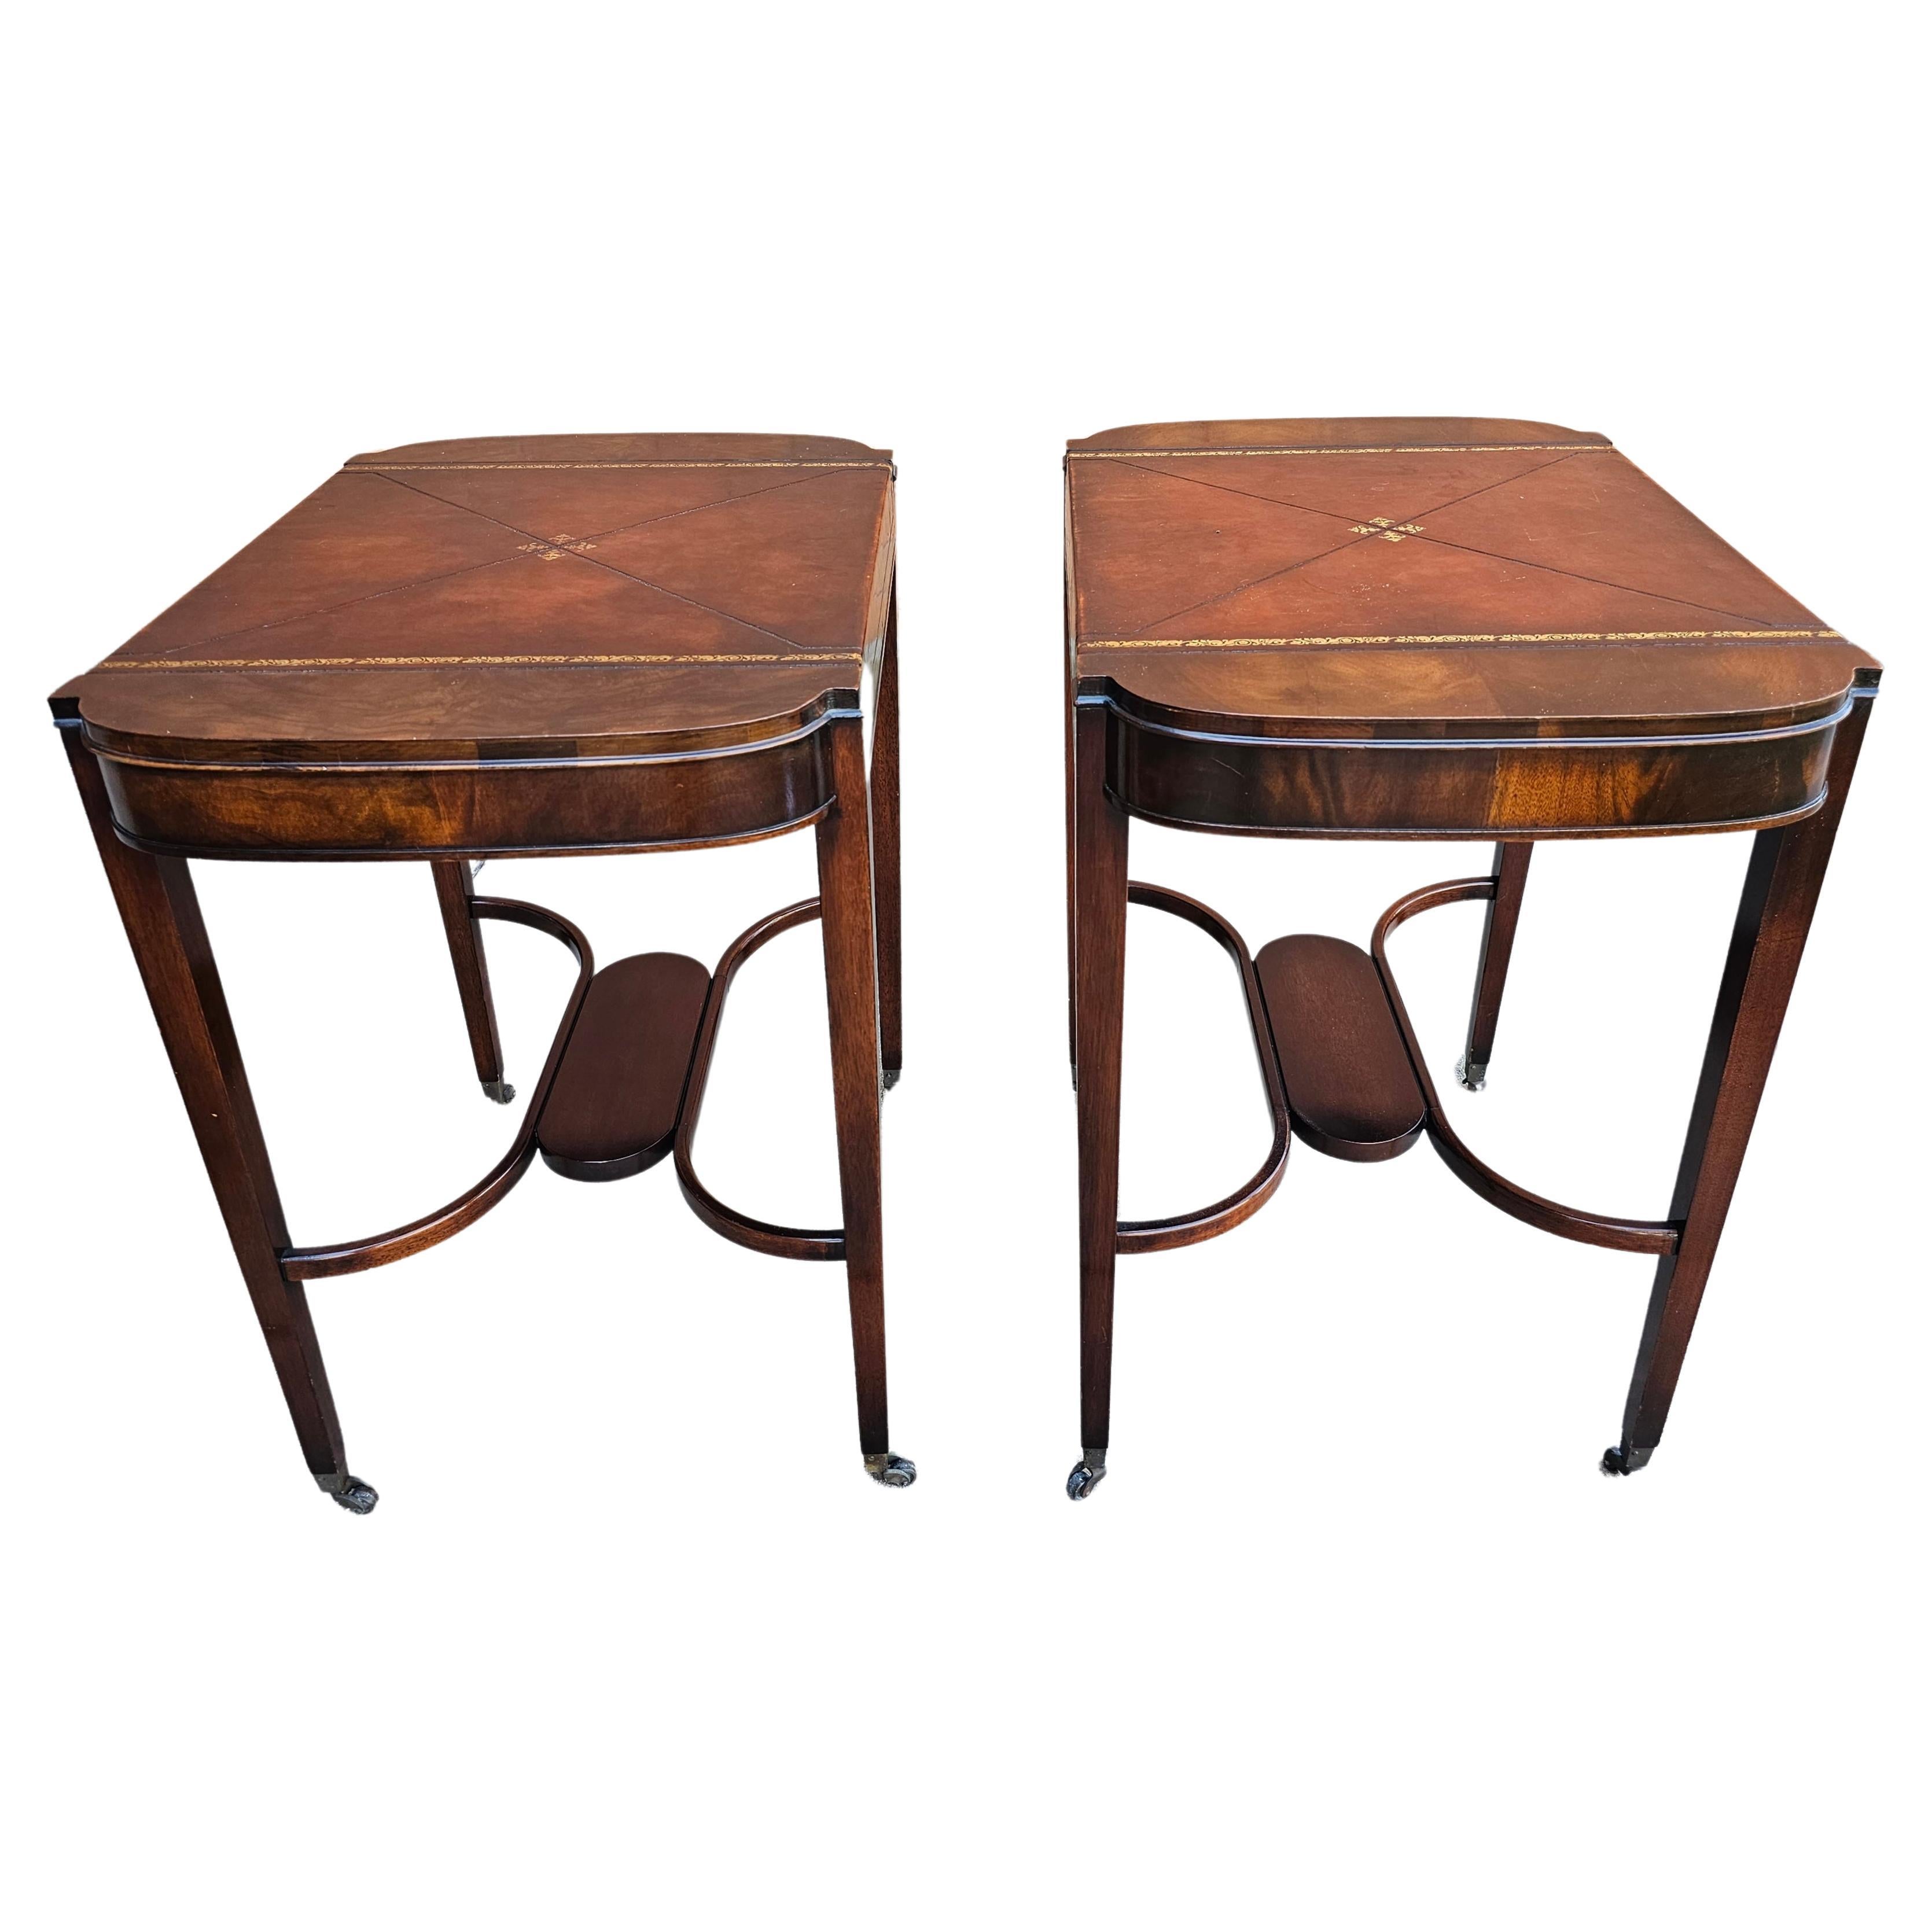 Paire de tables d'appoint sur roulettes en acajou avec dessus en cuir toilé Weiman de style Régence du milieu du siècle dernier en très bon état. 17.5